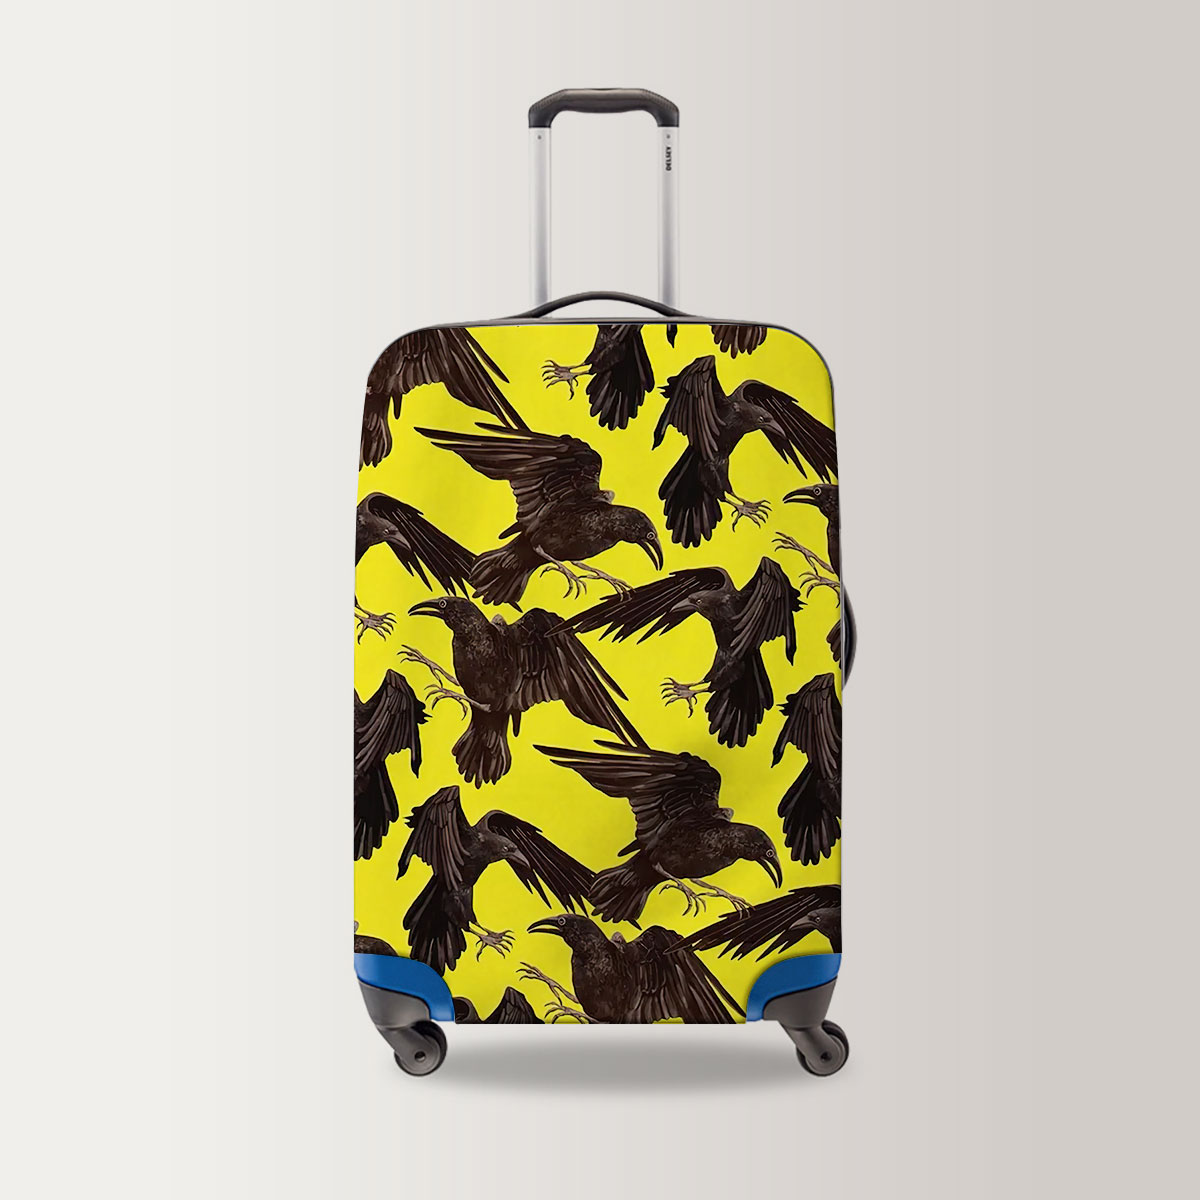 Raven On Yellow Background Luggage Bag